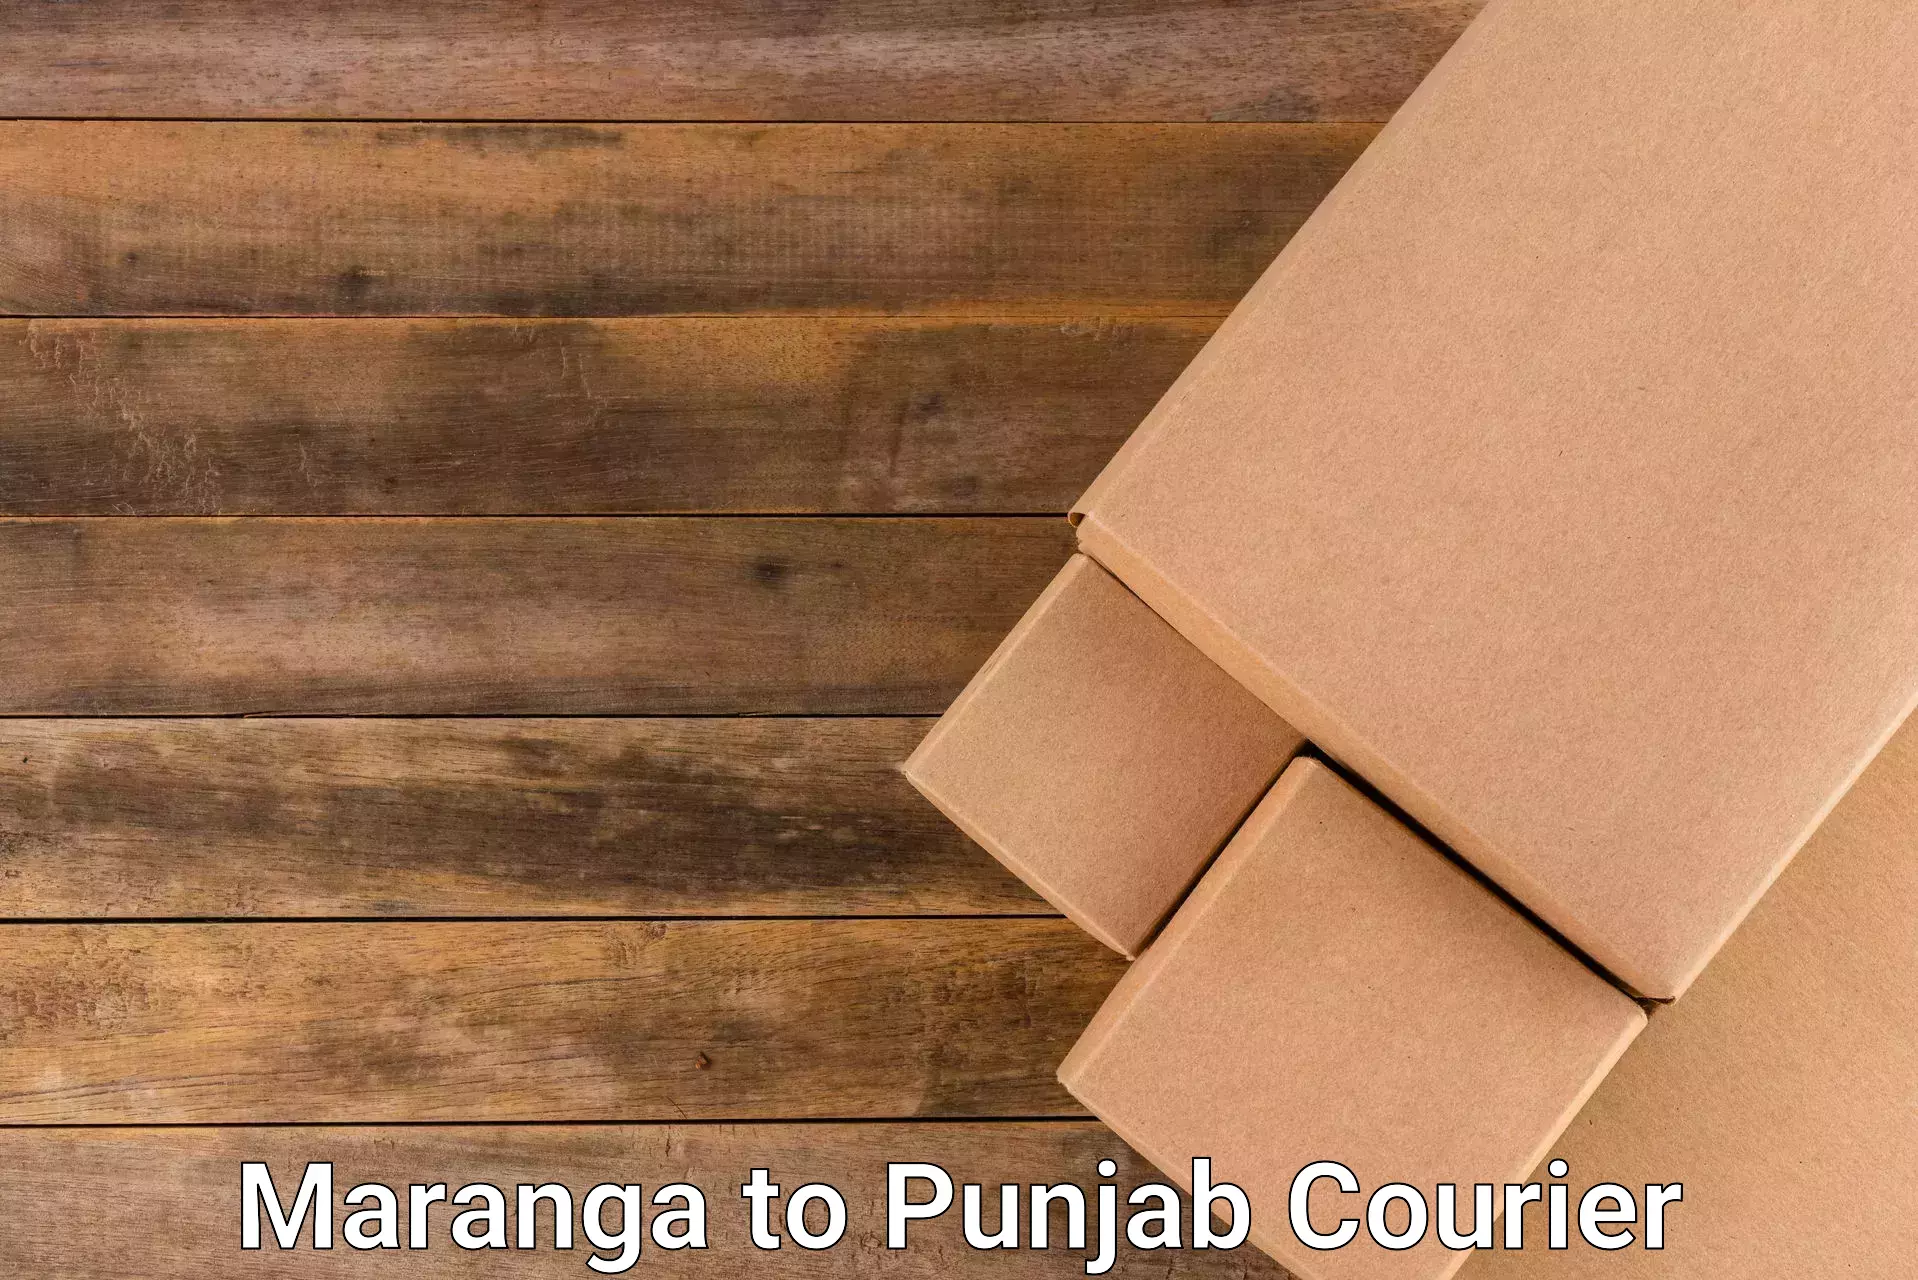 Postal and courier services Maranga to Anandpur Sahib